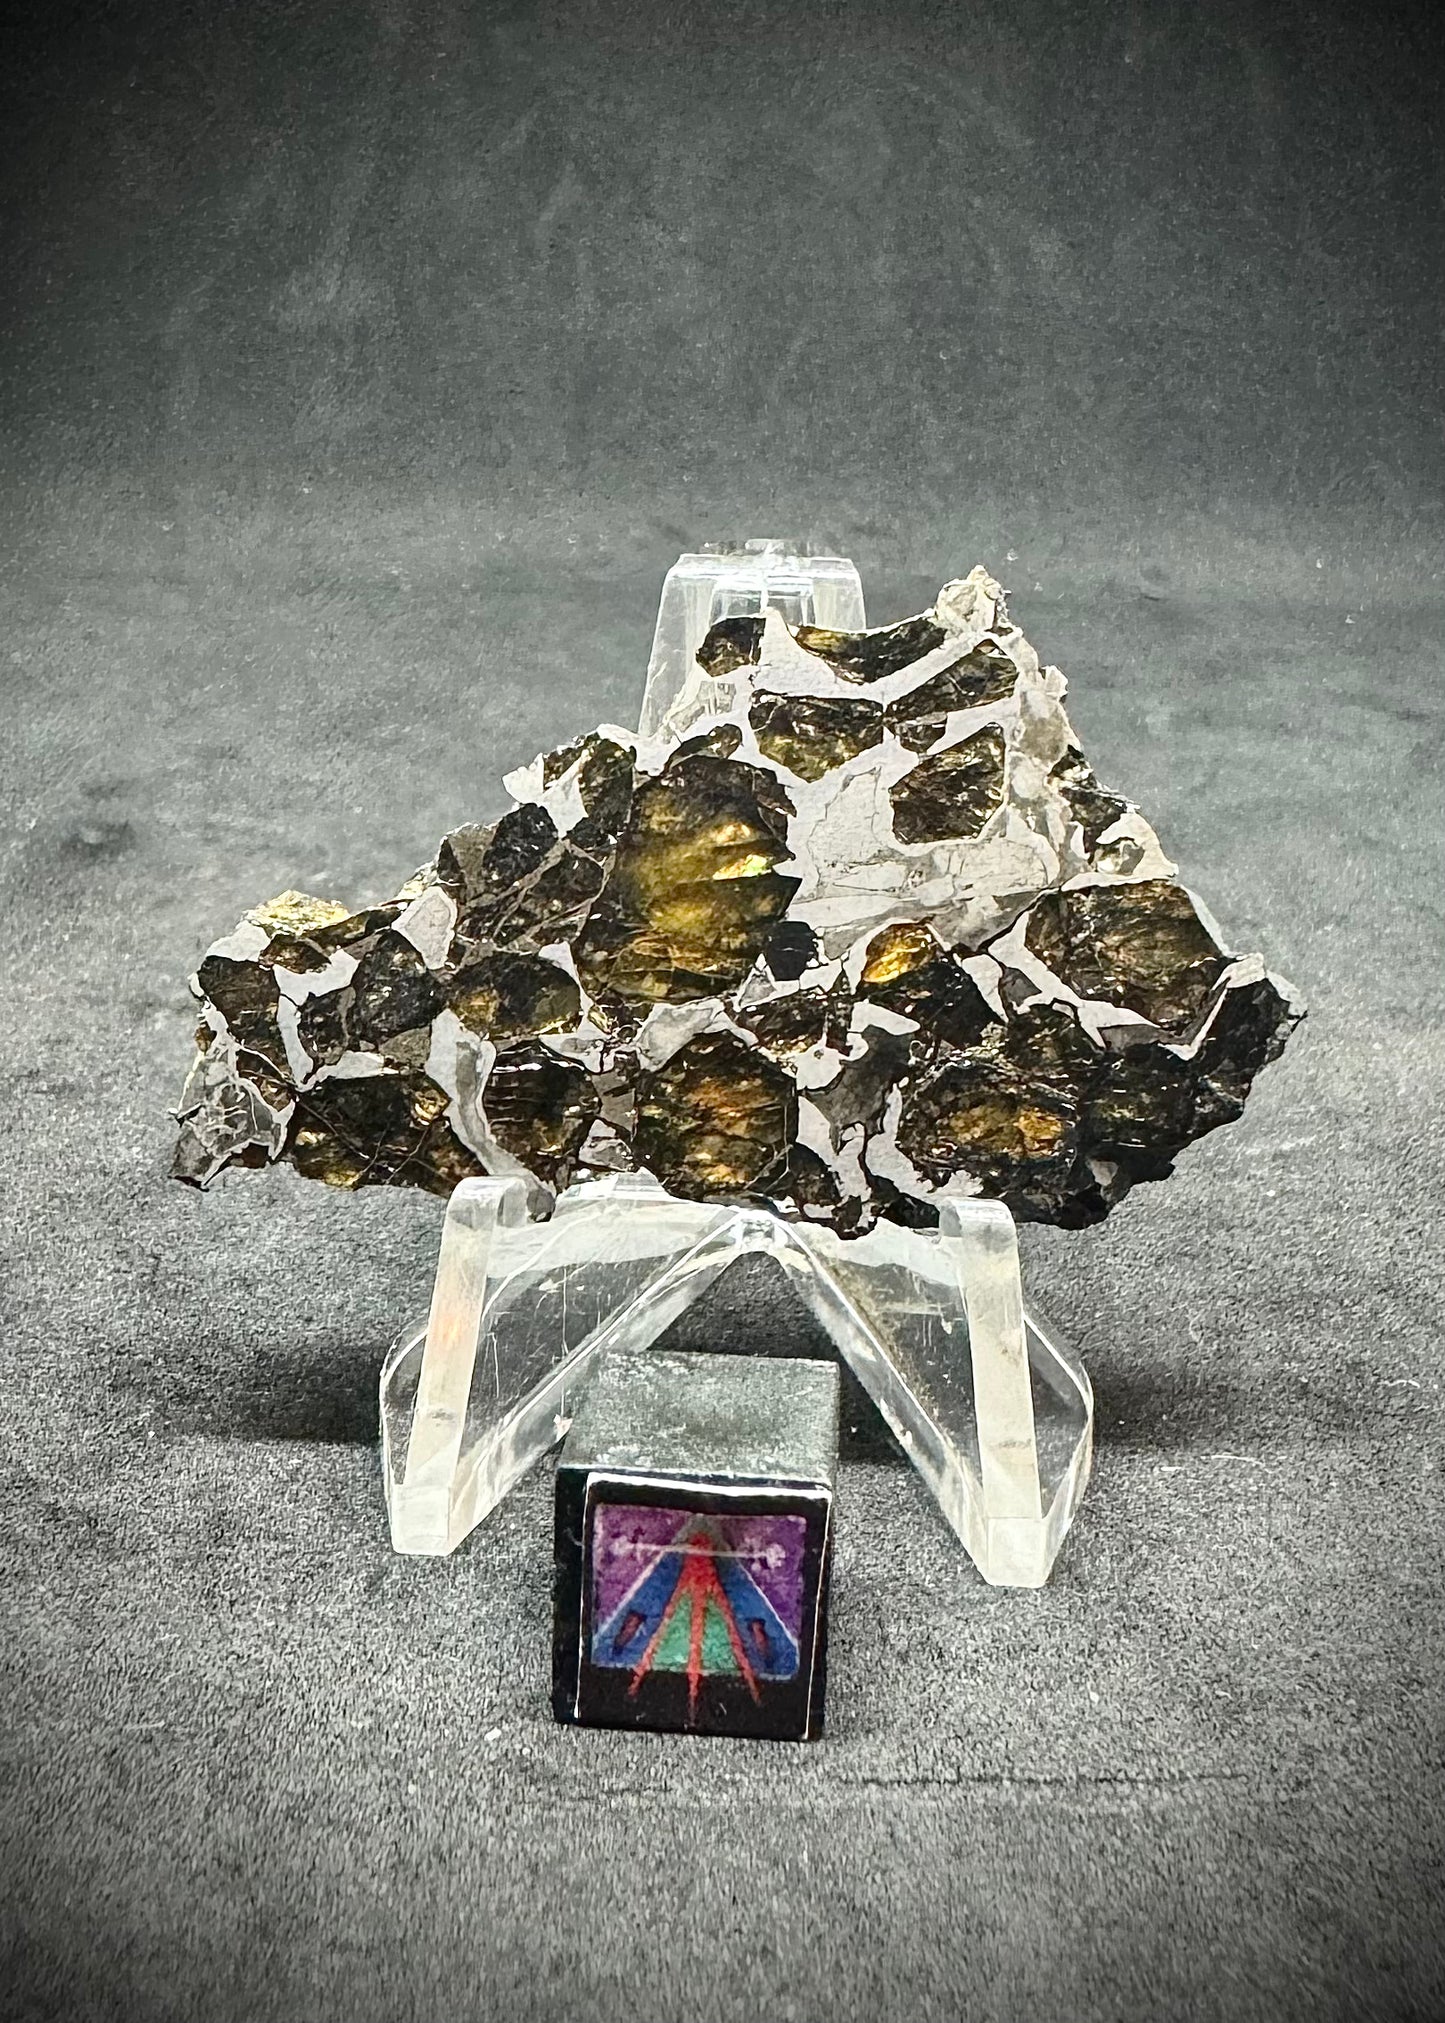 Brahin Pallasite Meteorite - 12.4g